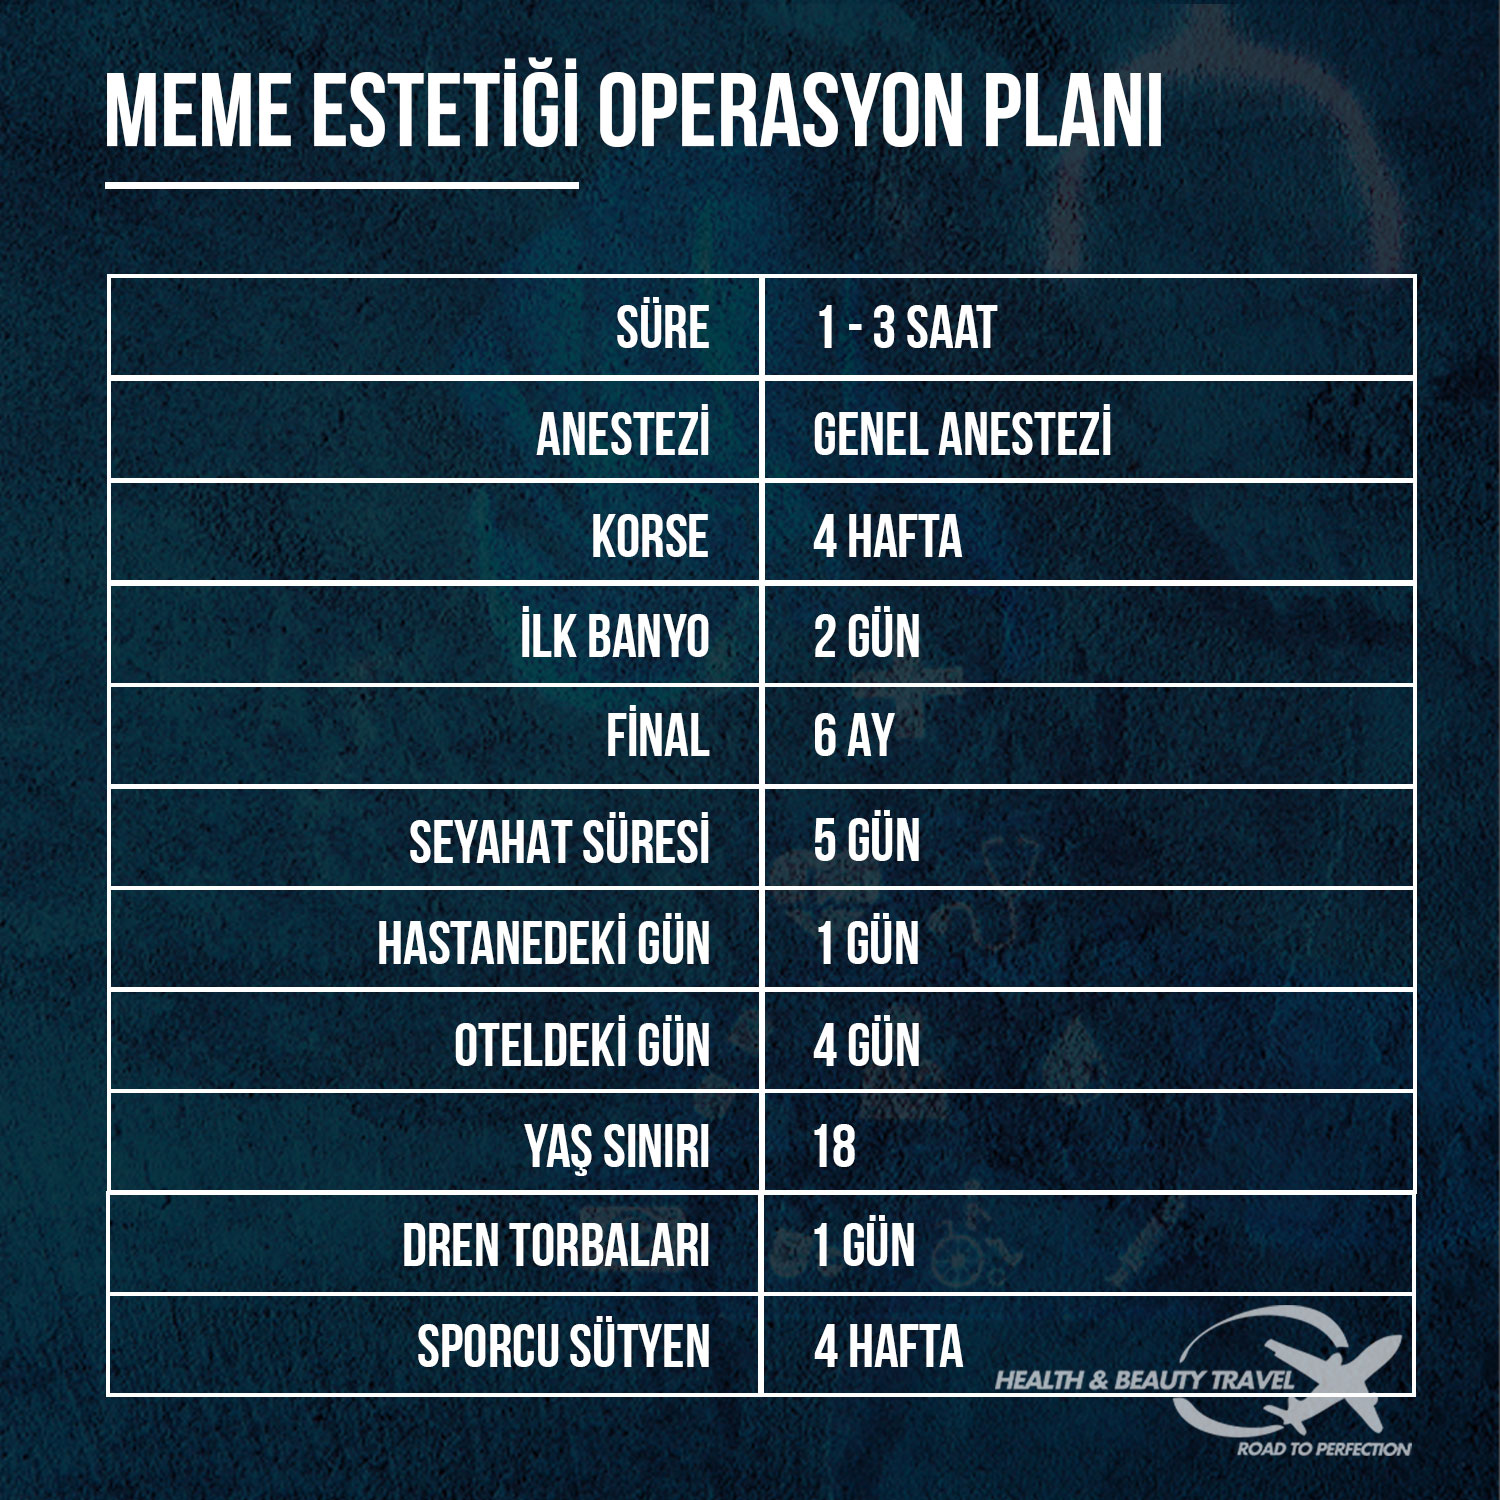 meme estetigi operasyon plani